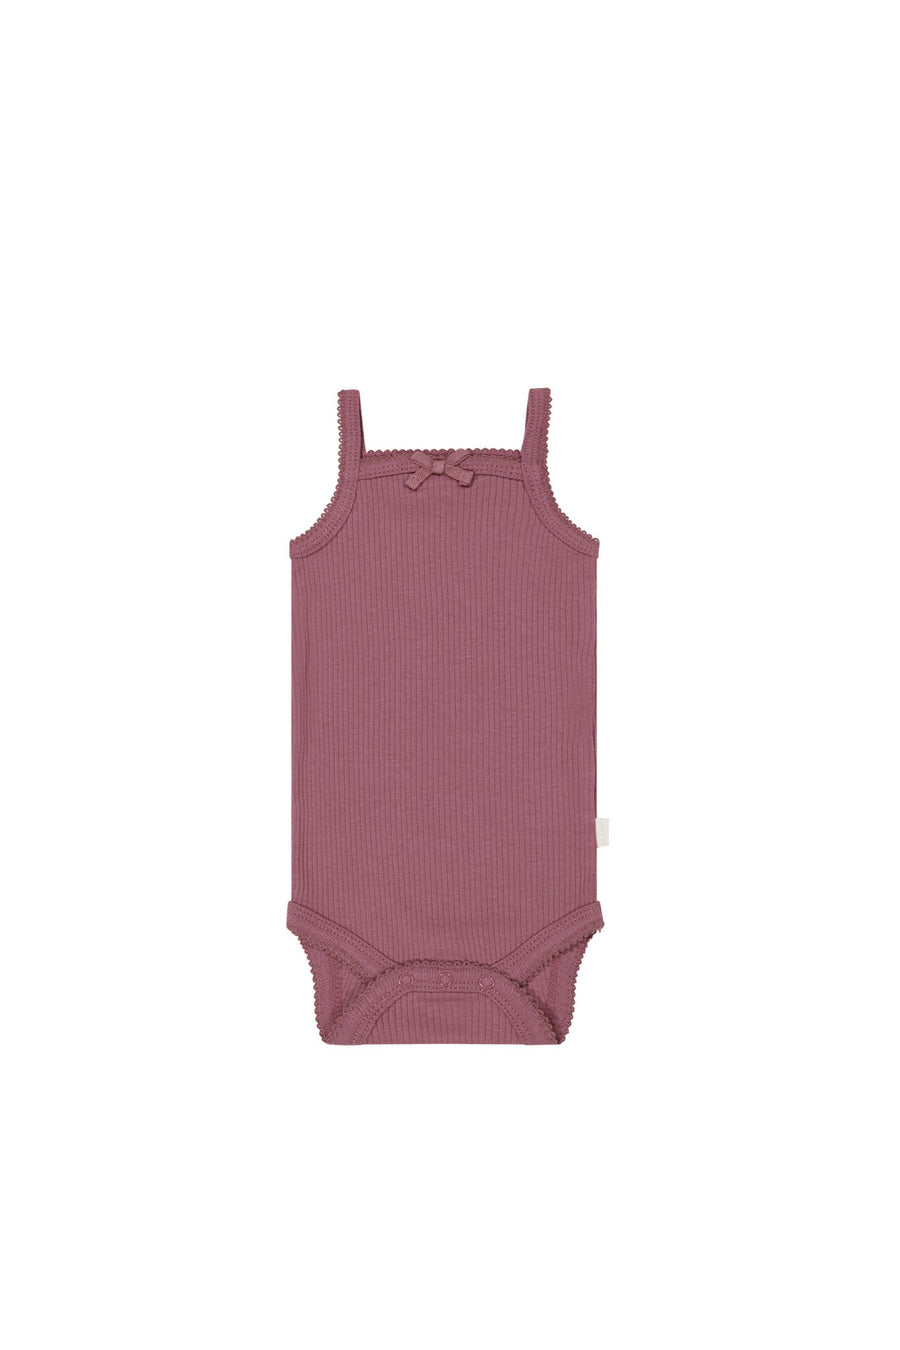 Organic Cotton Modal Singlet Bodysuit - Rosette Childrens Bodysuit from Jamie Kay USA